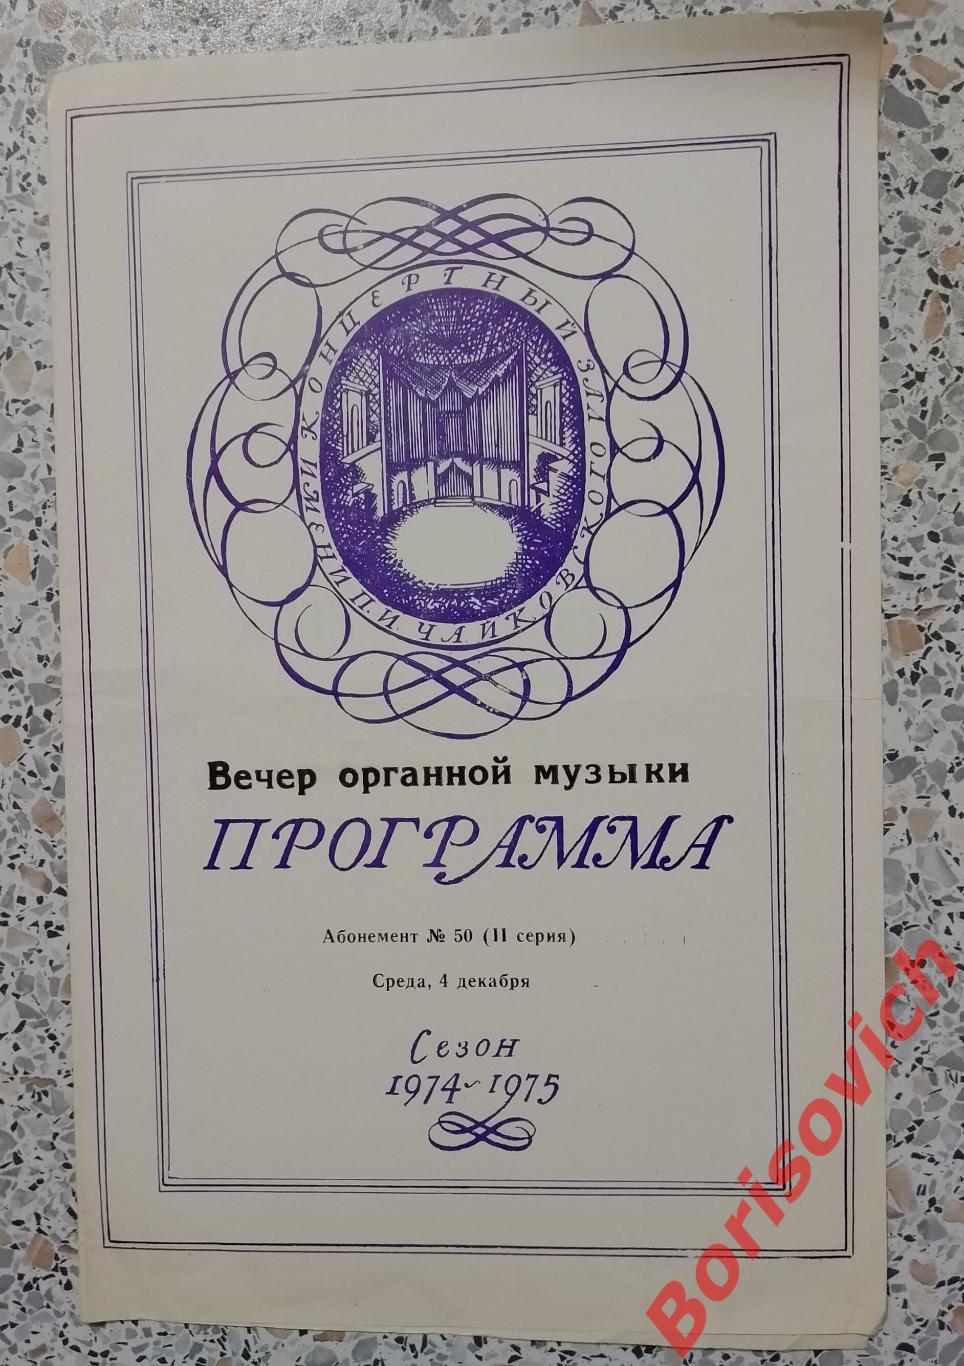 Программка Концертный зал им П. И. Чайковского ВЕЧЕР ОРГАННОЙ МУЗЫКИ 1974